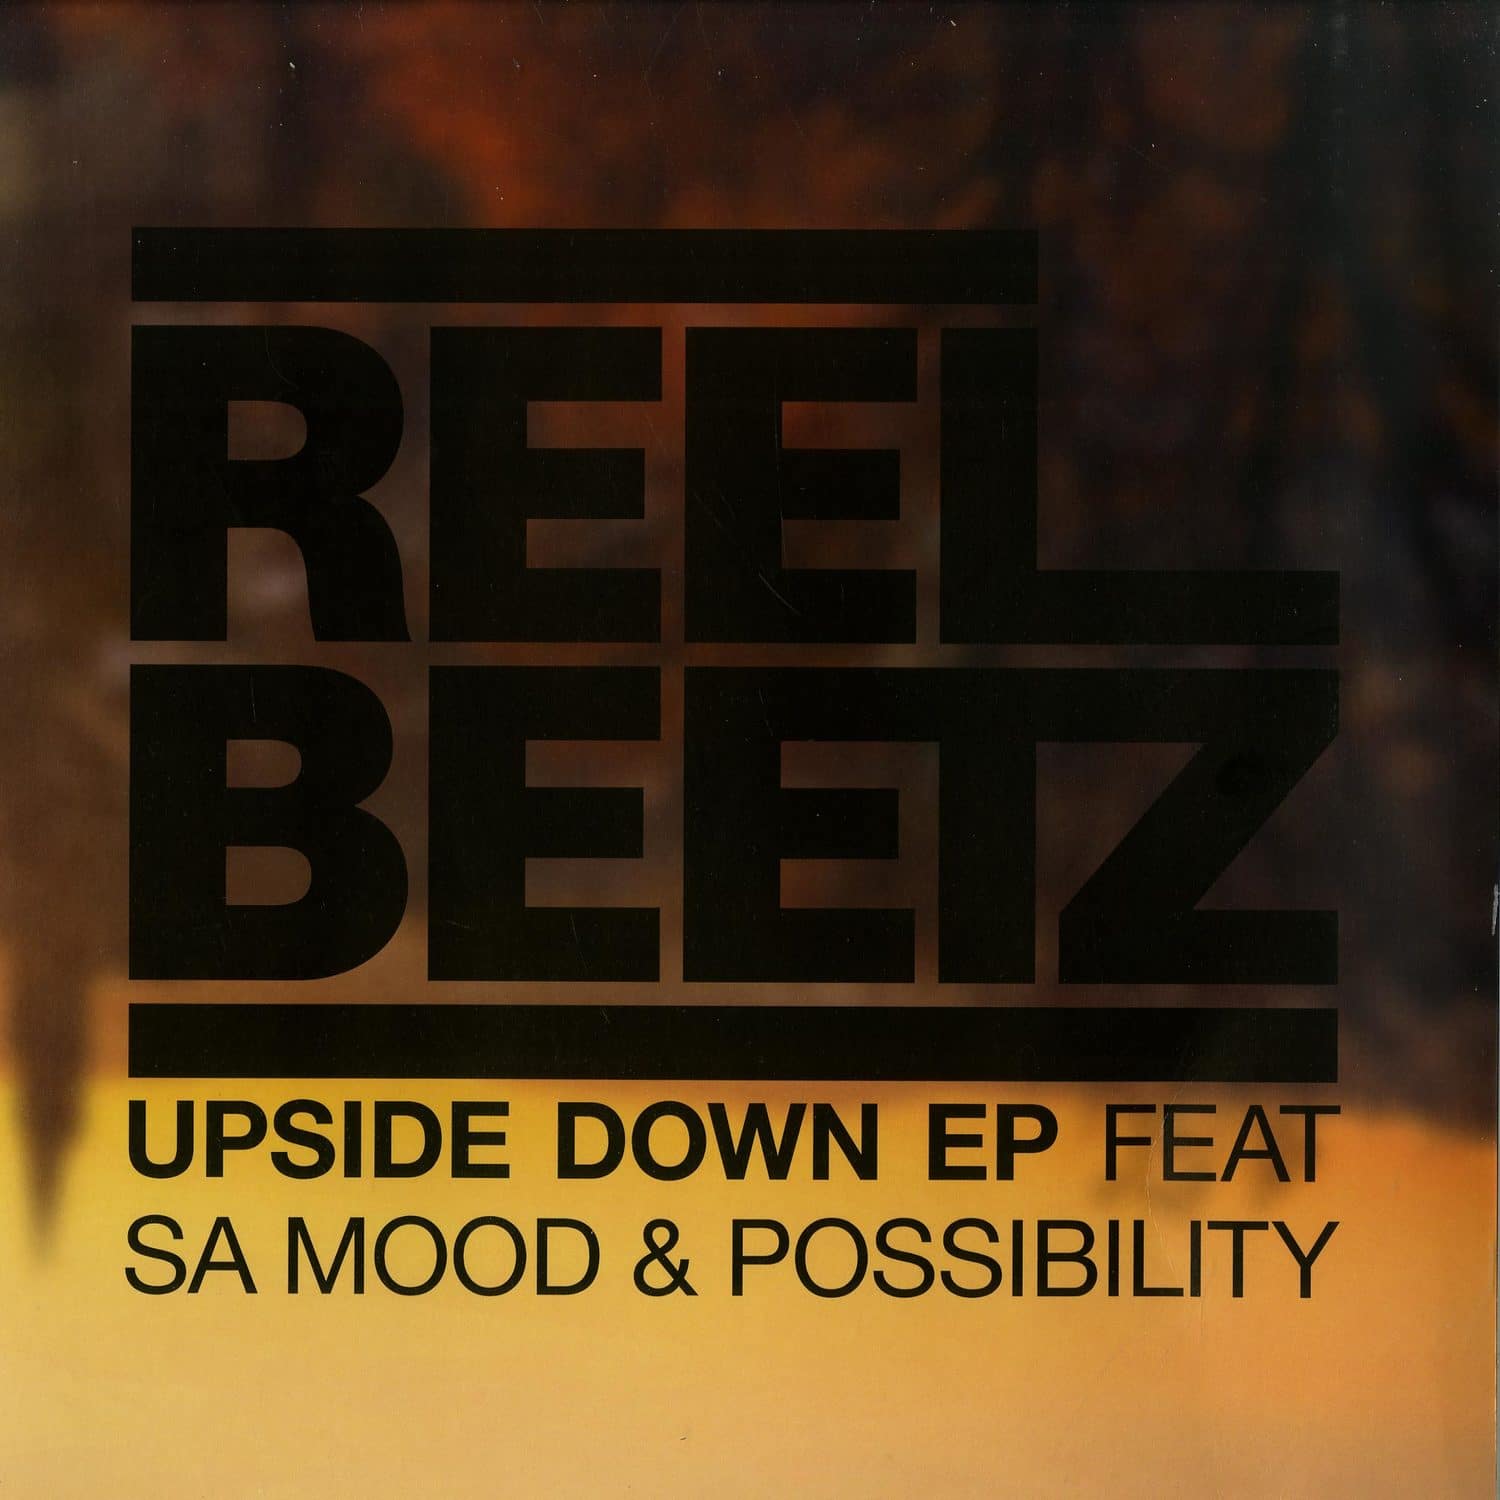 Reel Beetz - UPSIDE DOWN